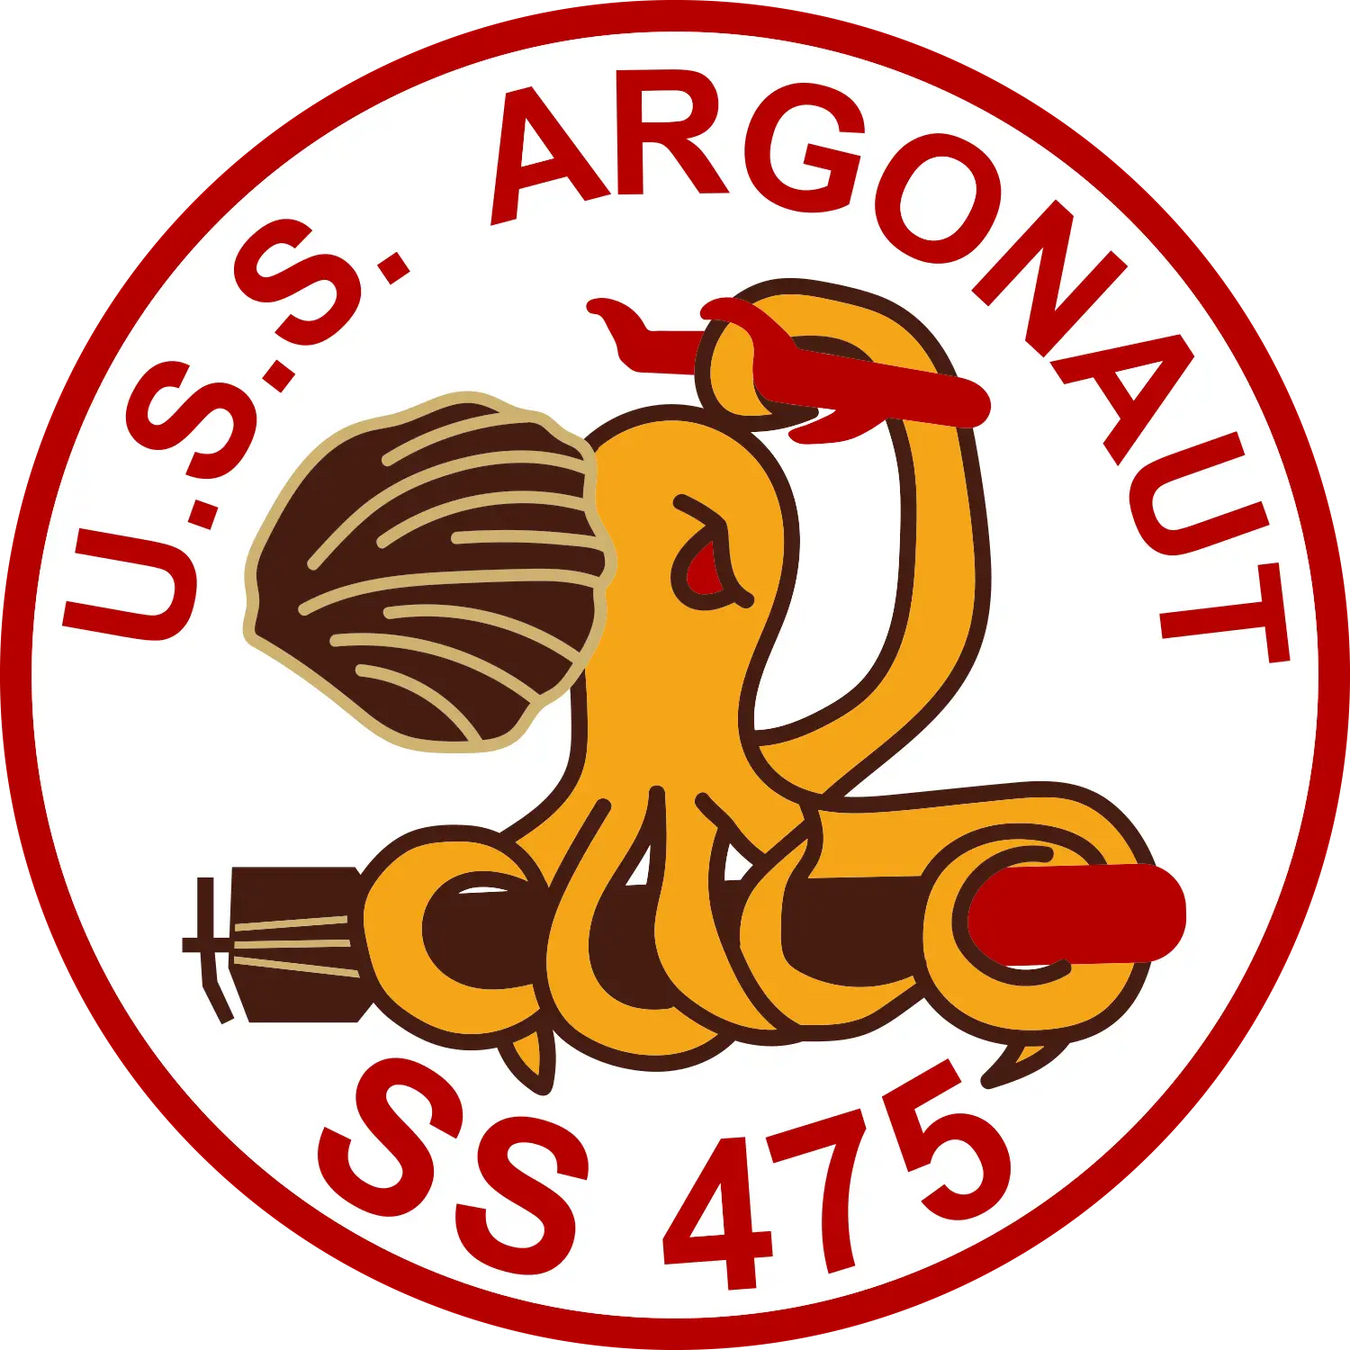 USS Argonaut (SS-475)